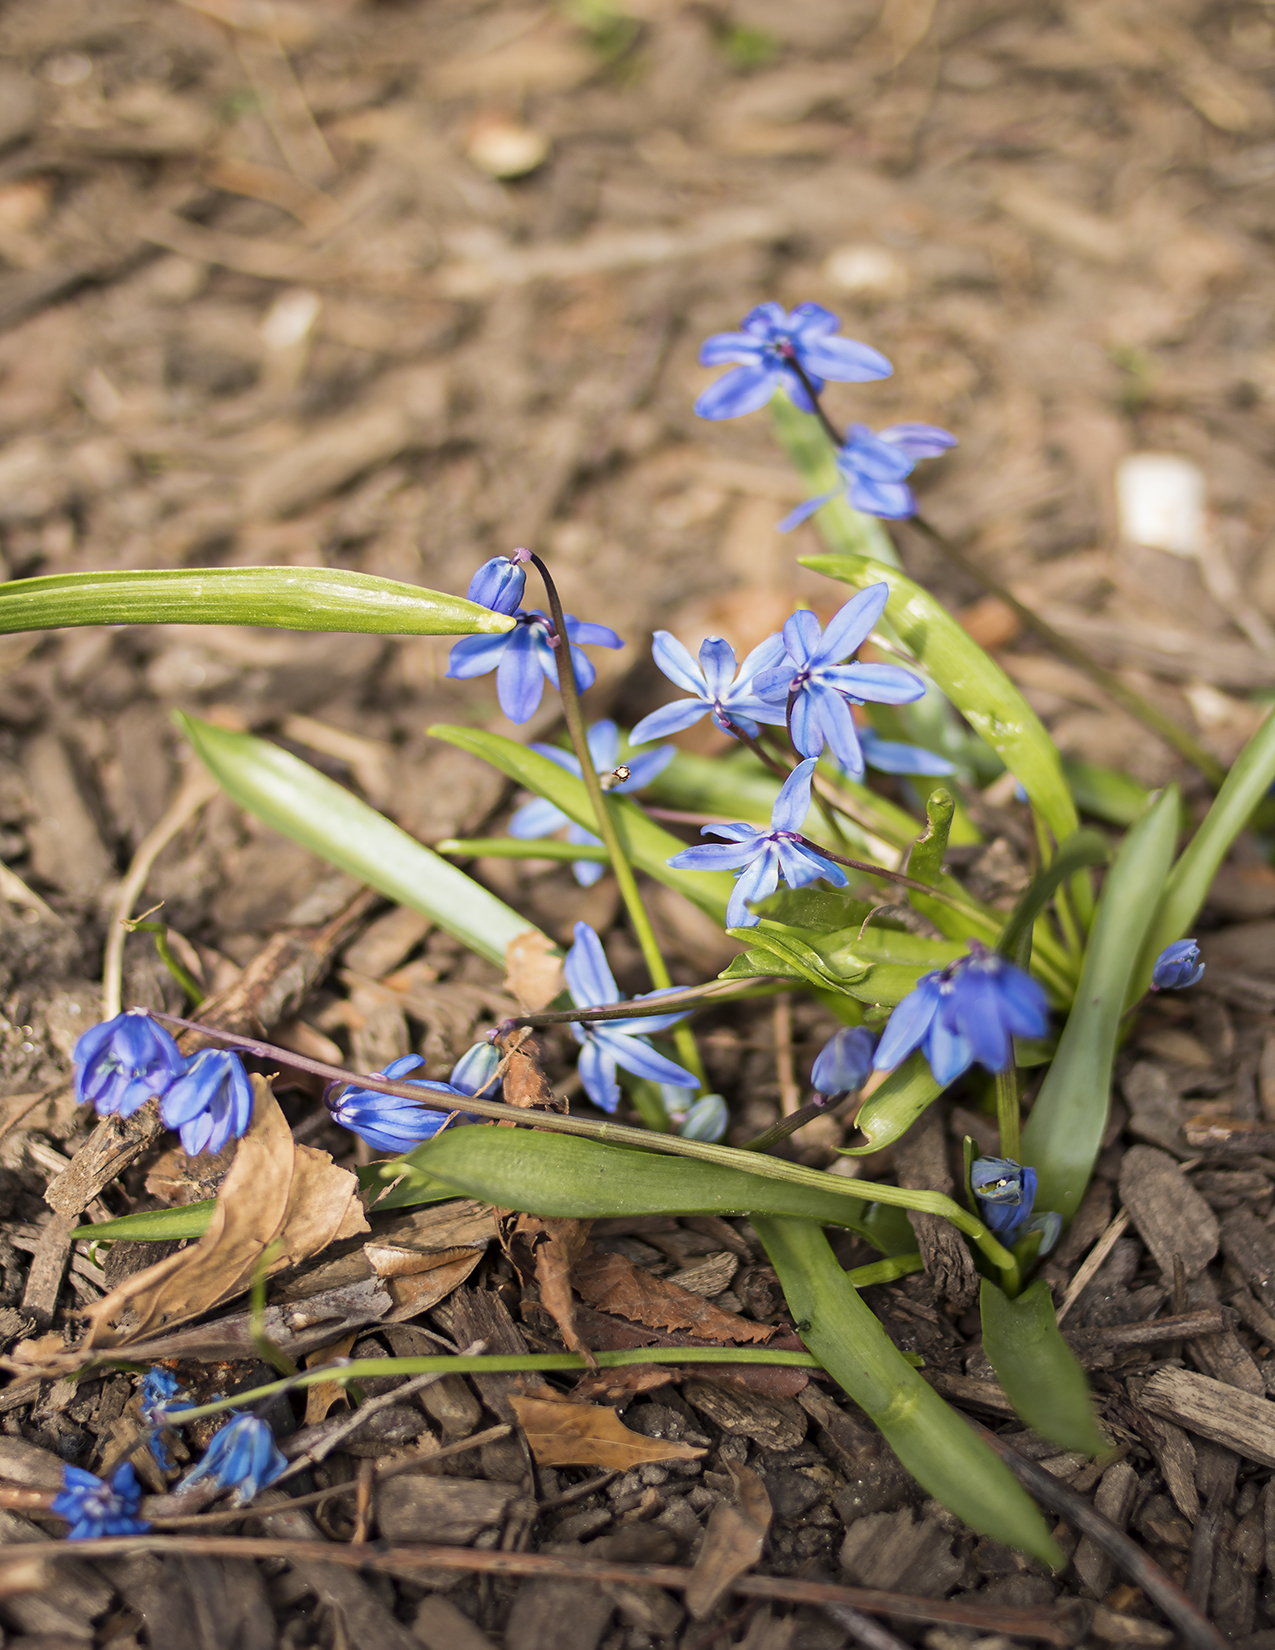 Eileen_Ko_Assignment_4_Blue_Flowers_in_Soil